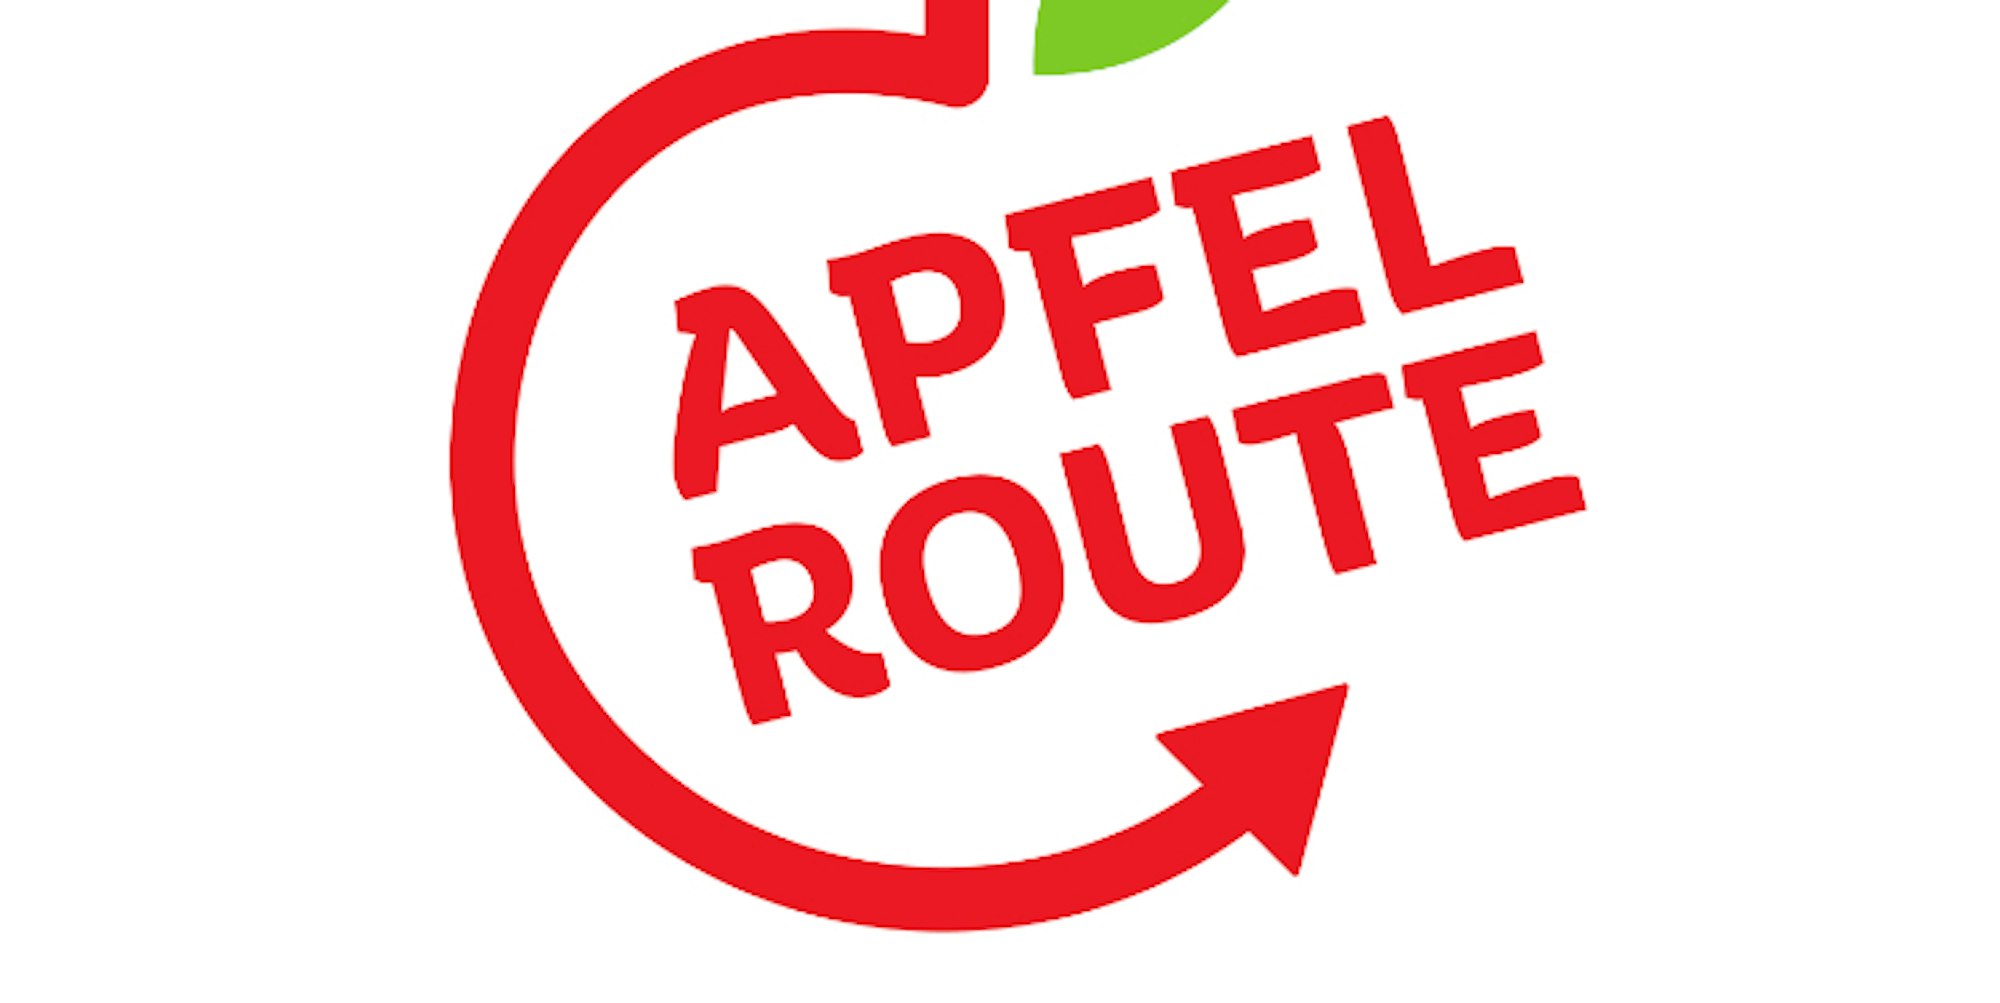 Apfelroute Logo